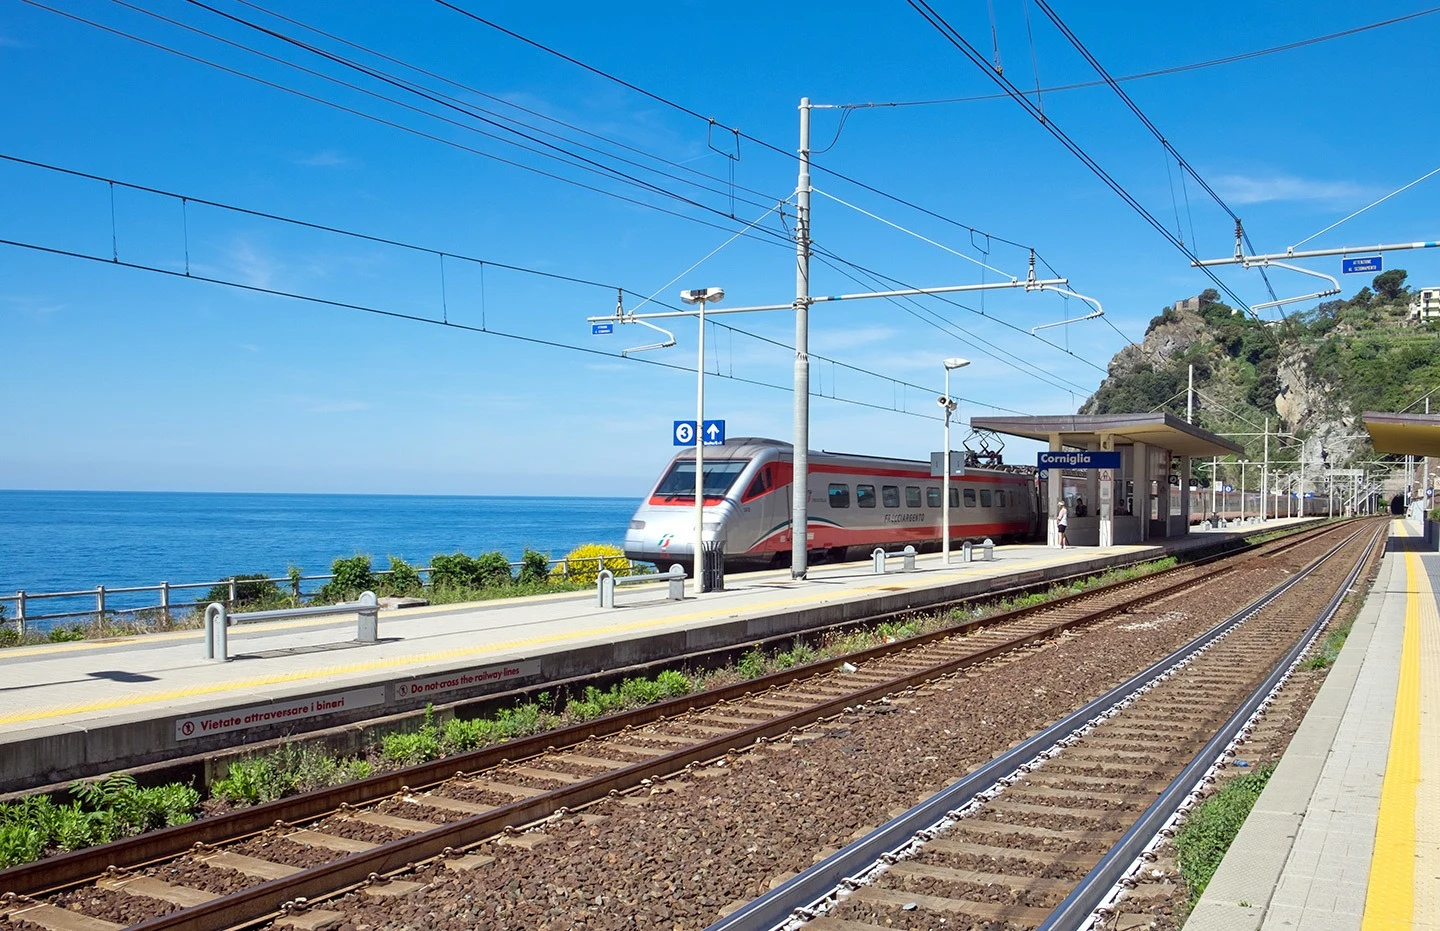 Coastal trains in the Cinque Terre, Italy, on a European rail trip